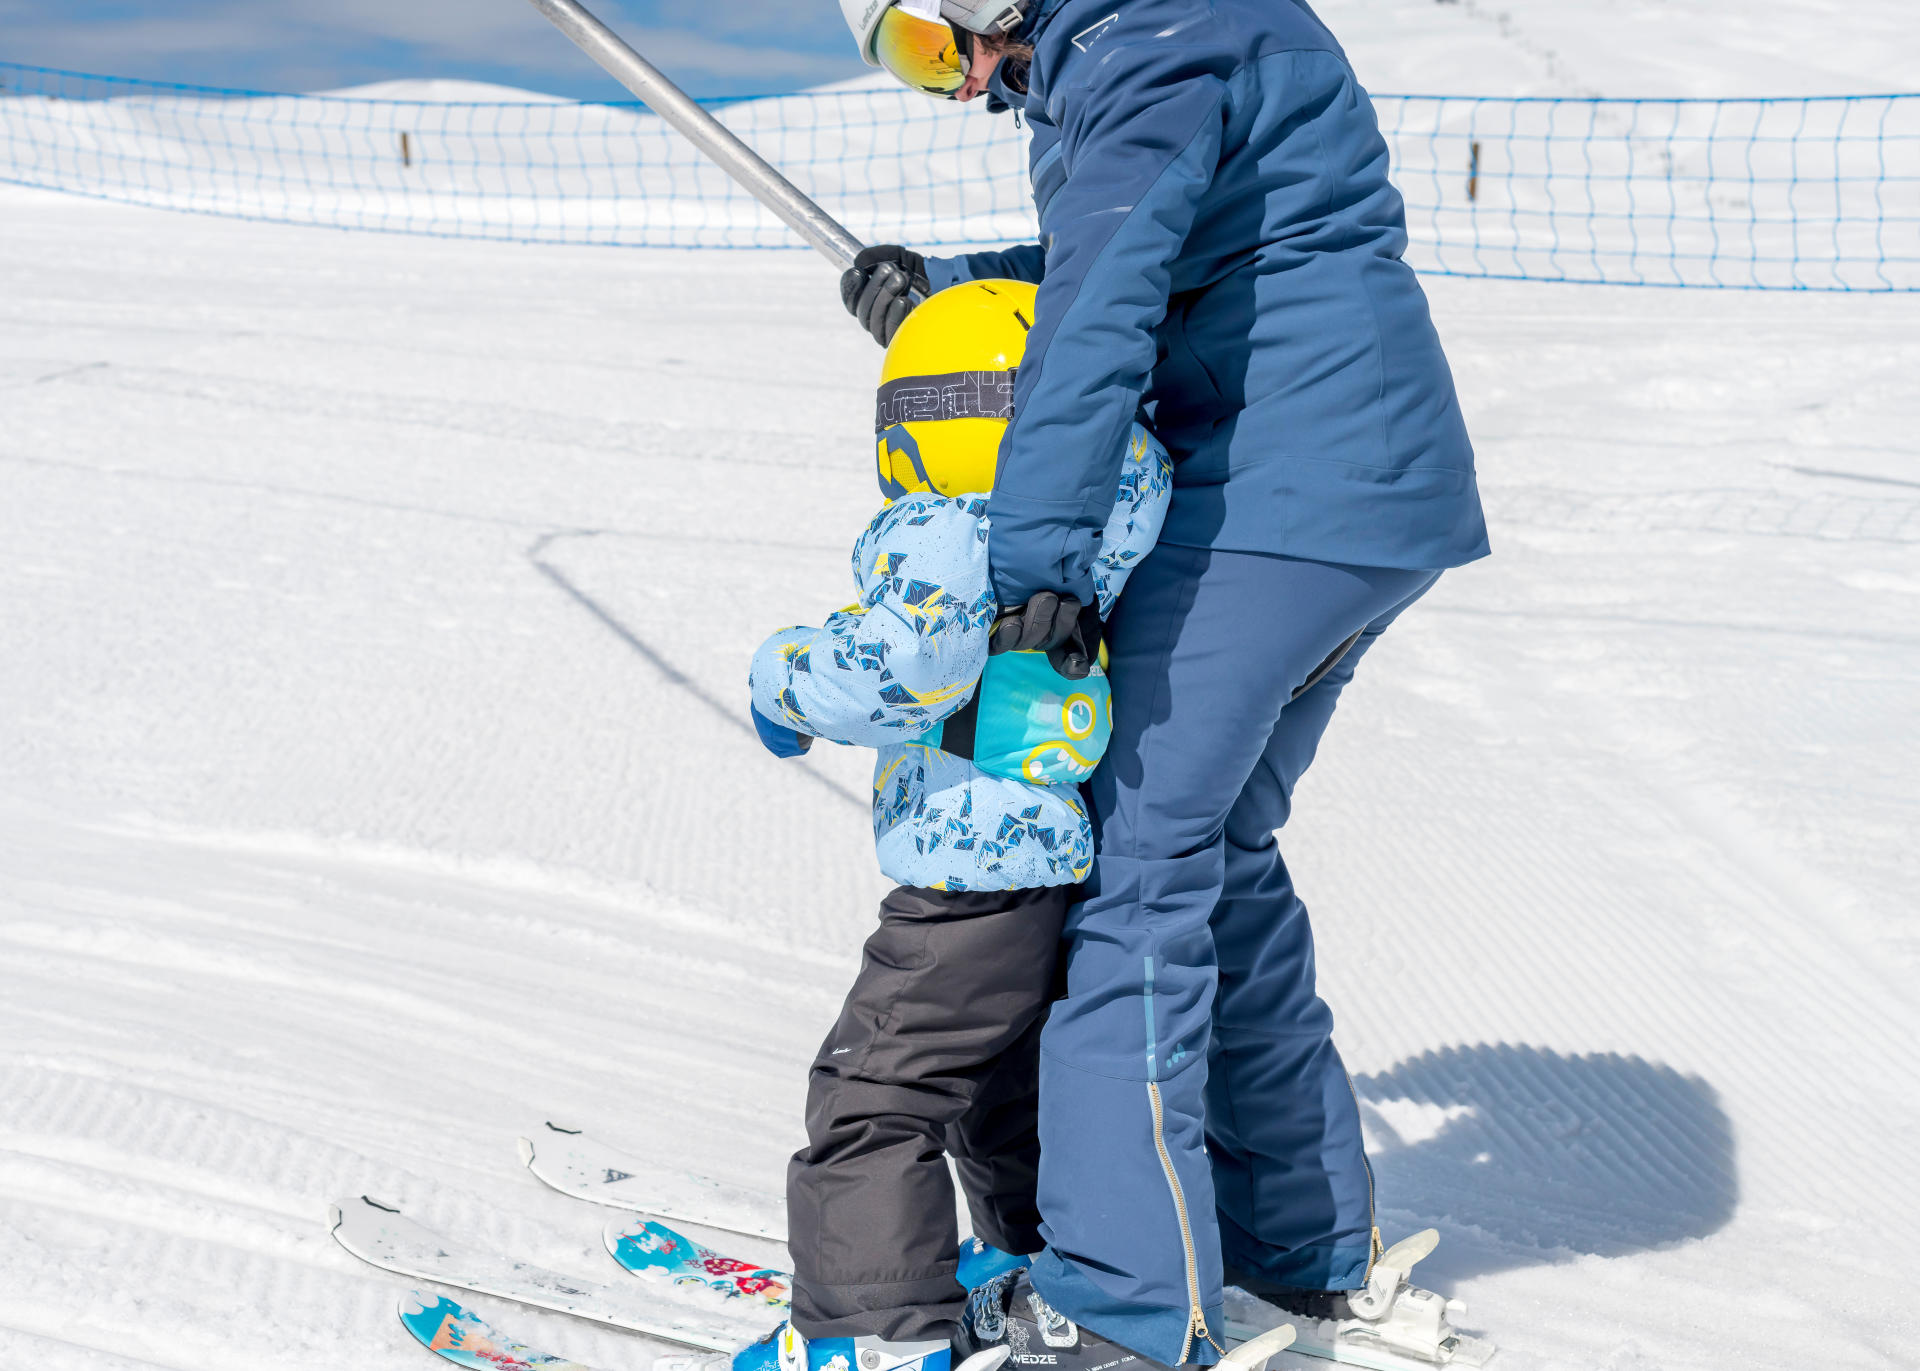 apprendre le ski aux tout petits grâce au harnais skiwiz avec Wed'ze